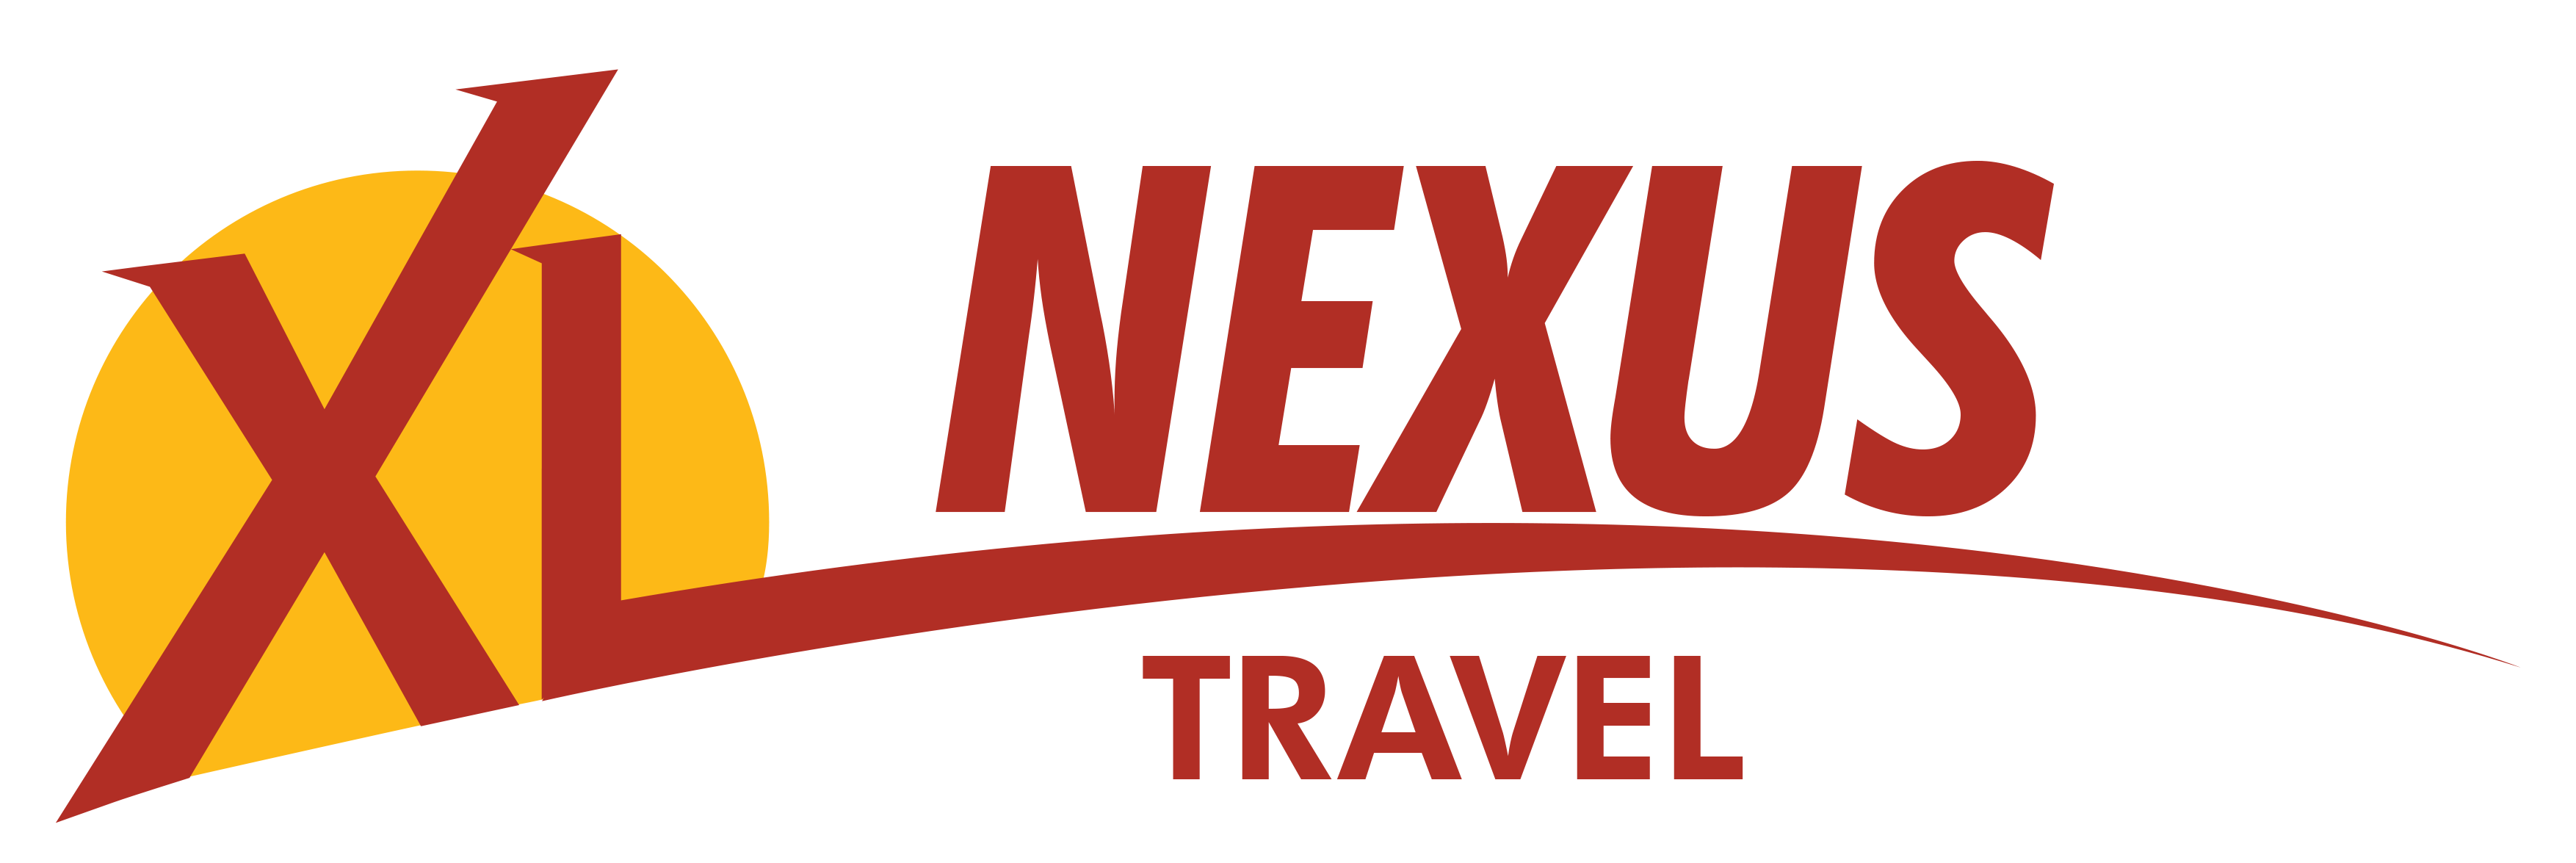 nexus travel corporation